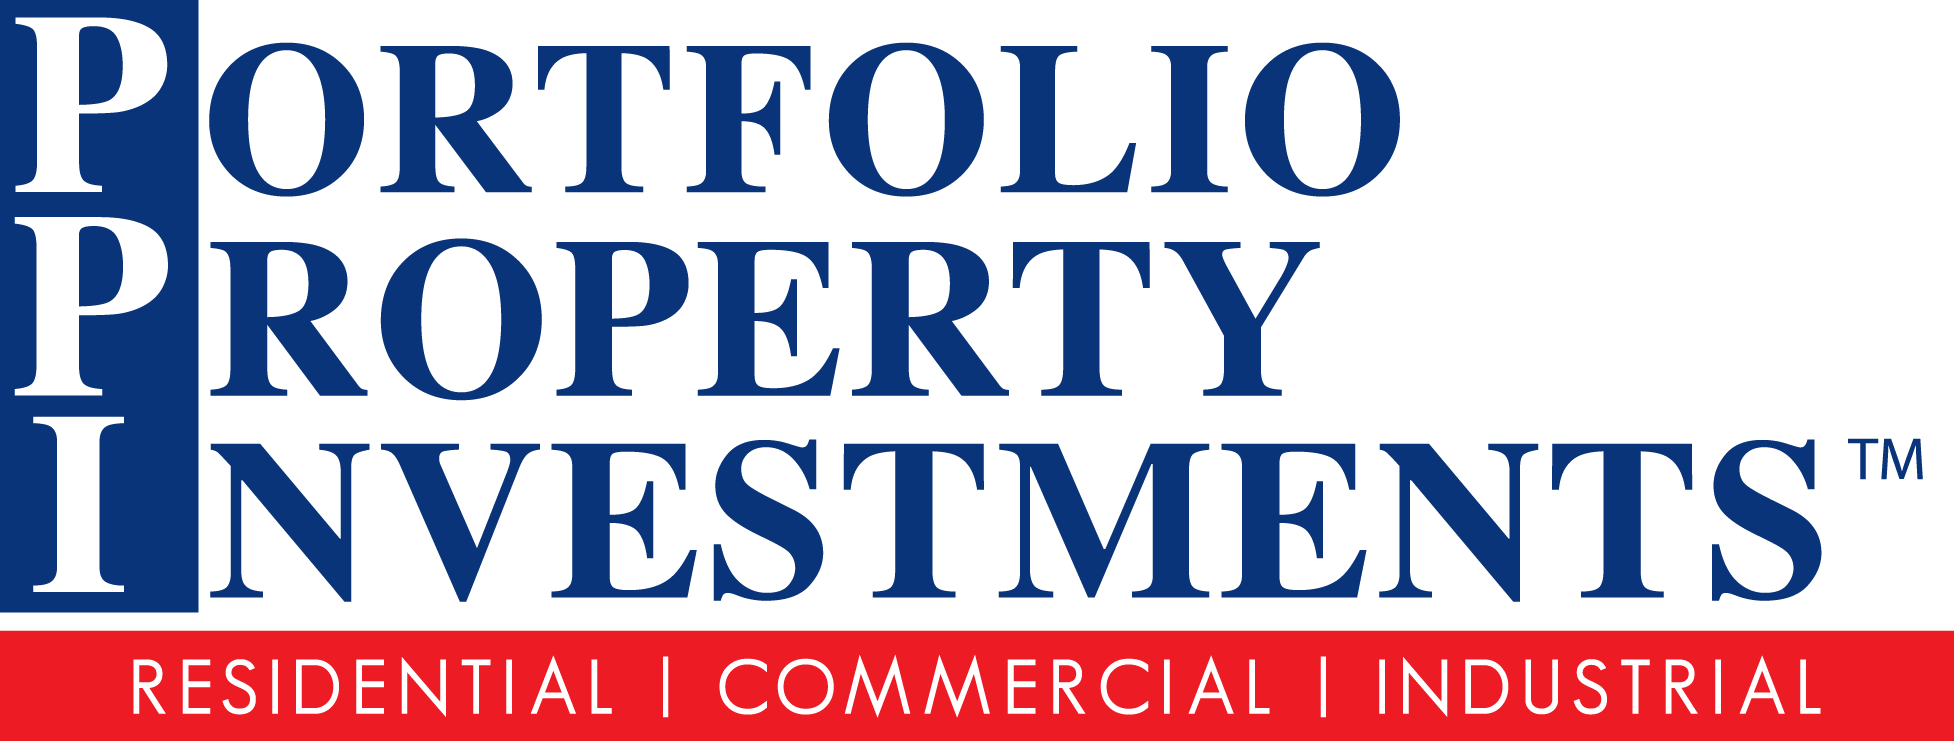 Portfolio Property Investments